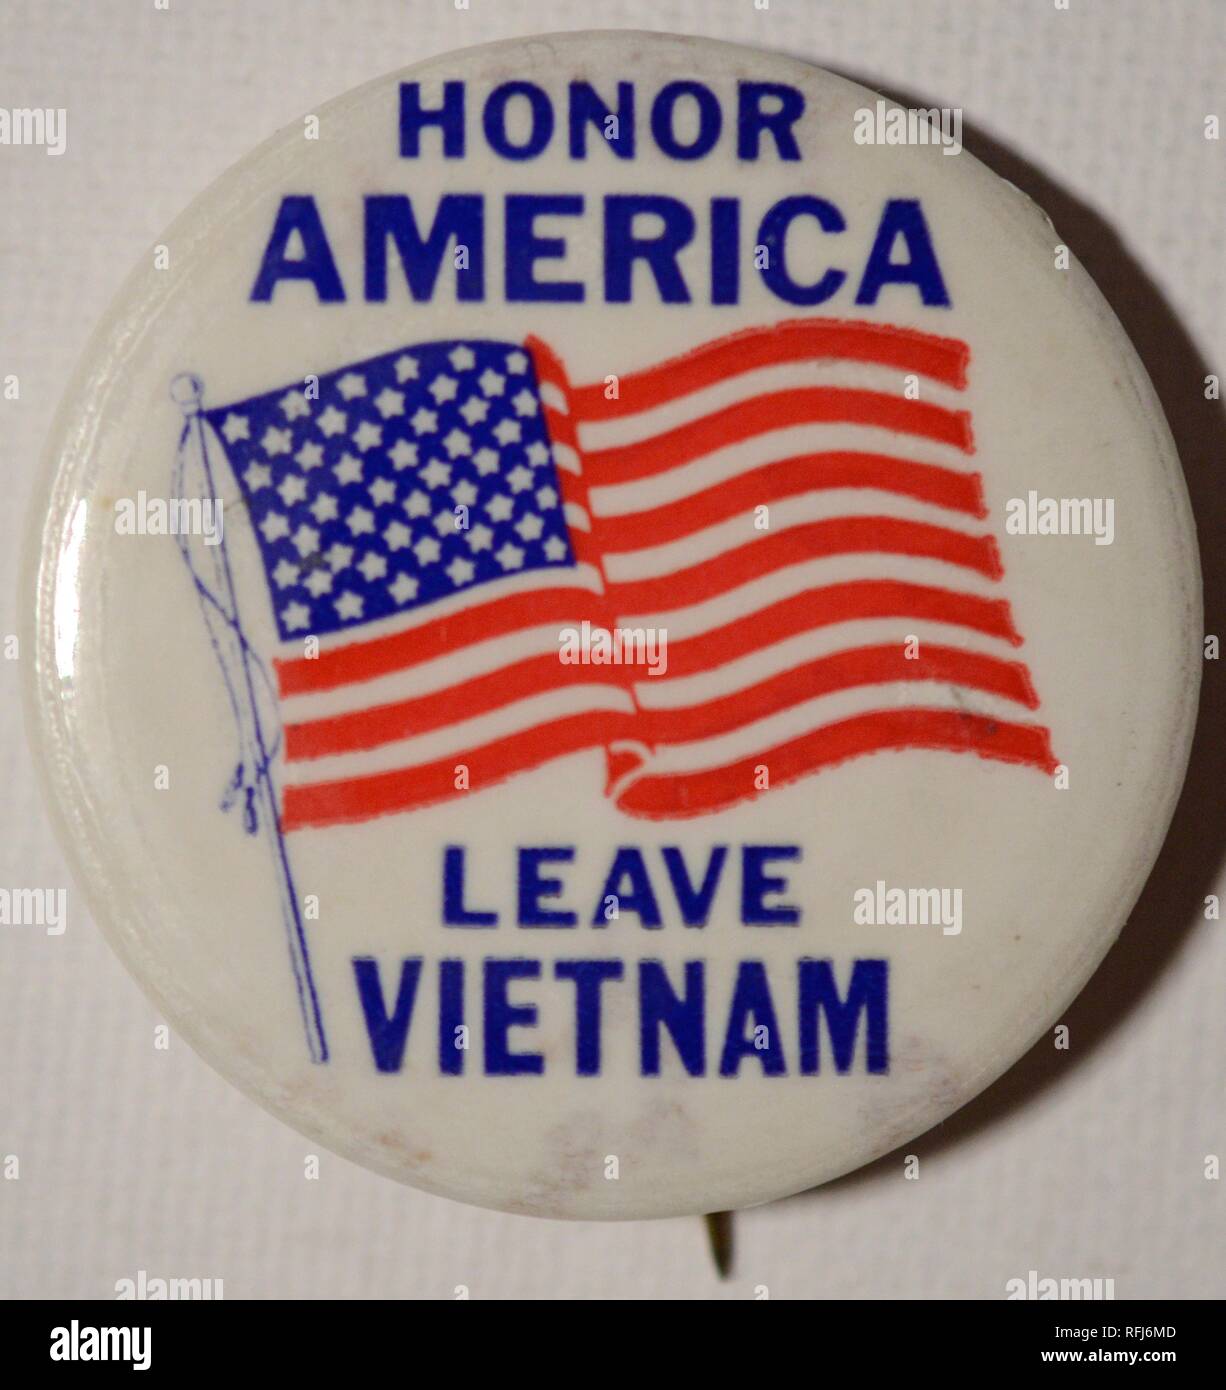 Rot, Weiß und Blau pin oder die Schaltfläche mit einem Bild einer amerikanischen Flagge und das Anti-kriegs-Botschaft "Ehre Amerika Vietnam verlassen," während des Vietnam Krieges, 1965 ausgestellt. () Stockfoto